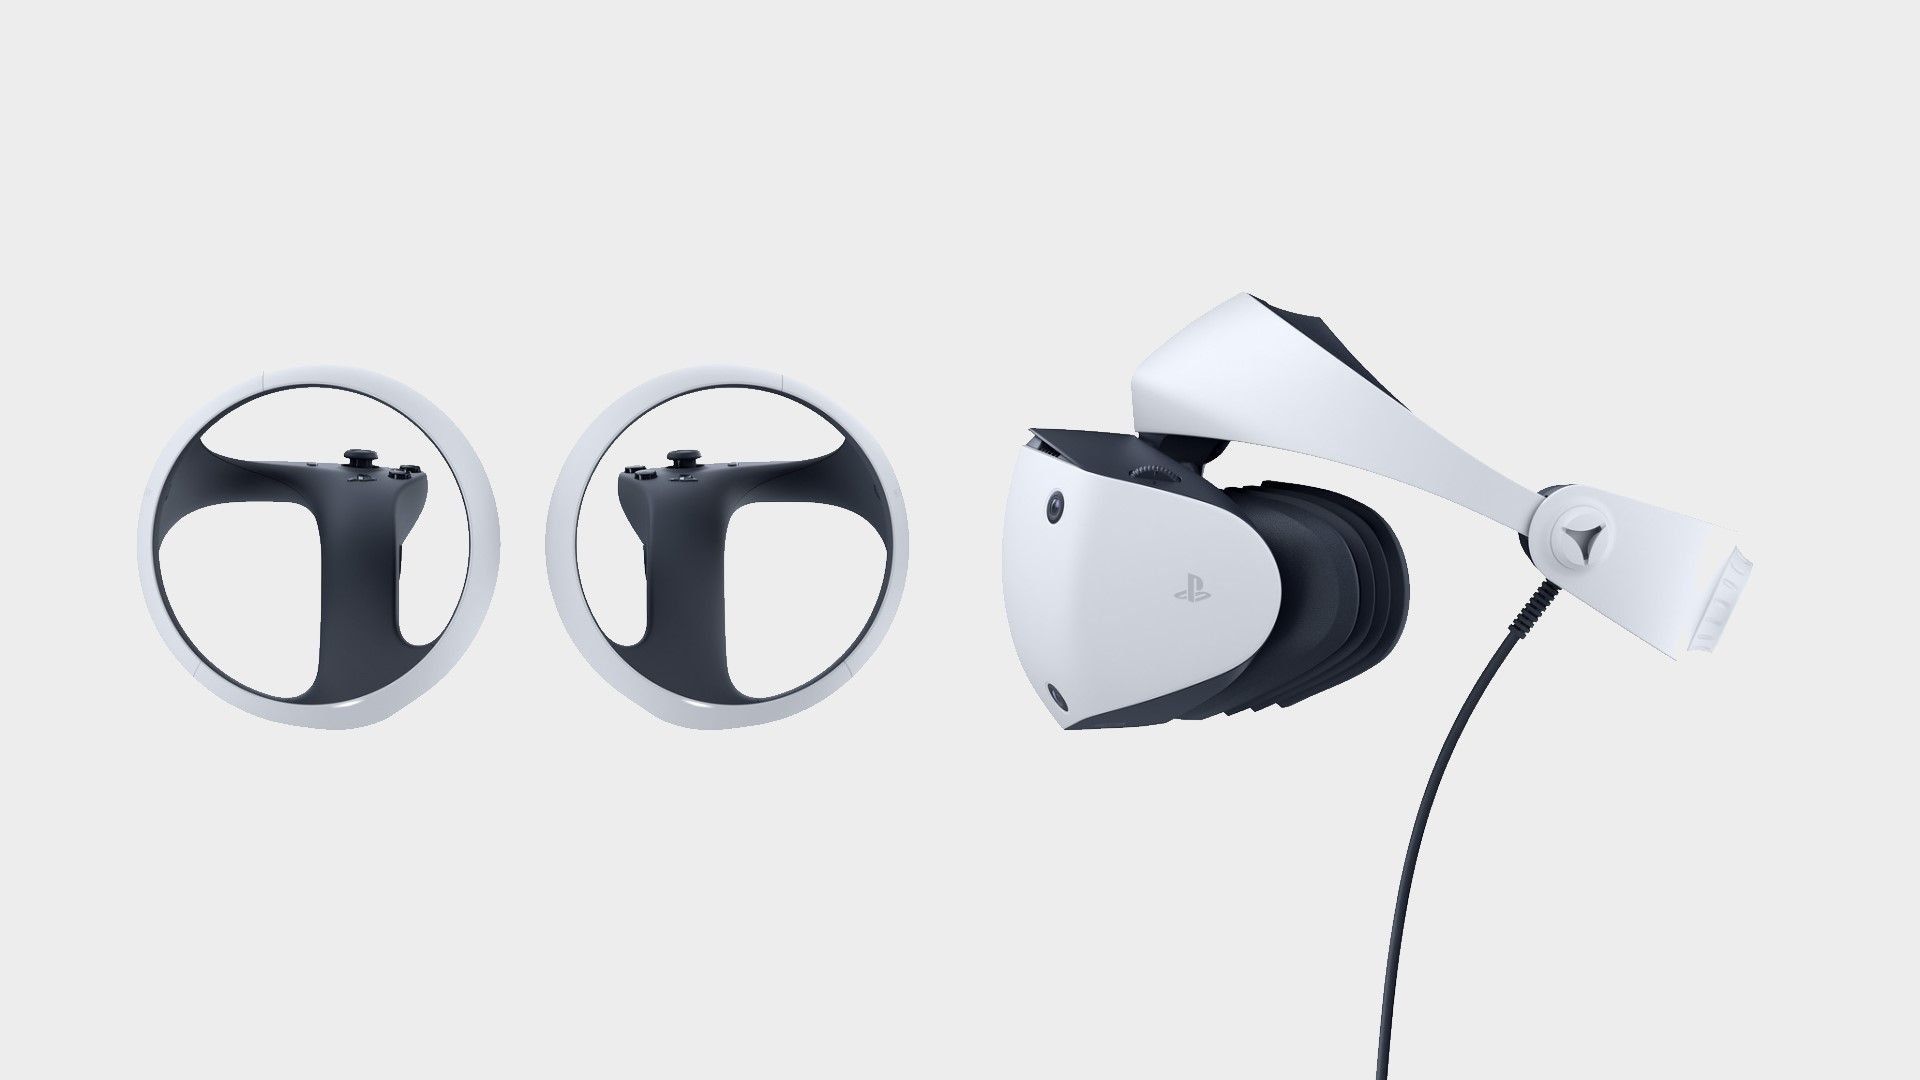 PSVR2 : Que vaut le casque VR de la PS5 [TEST] - VR ACTU